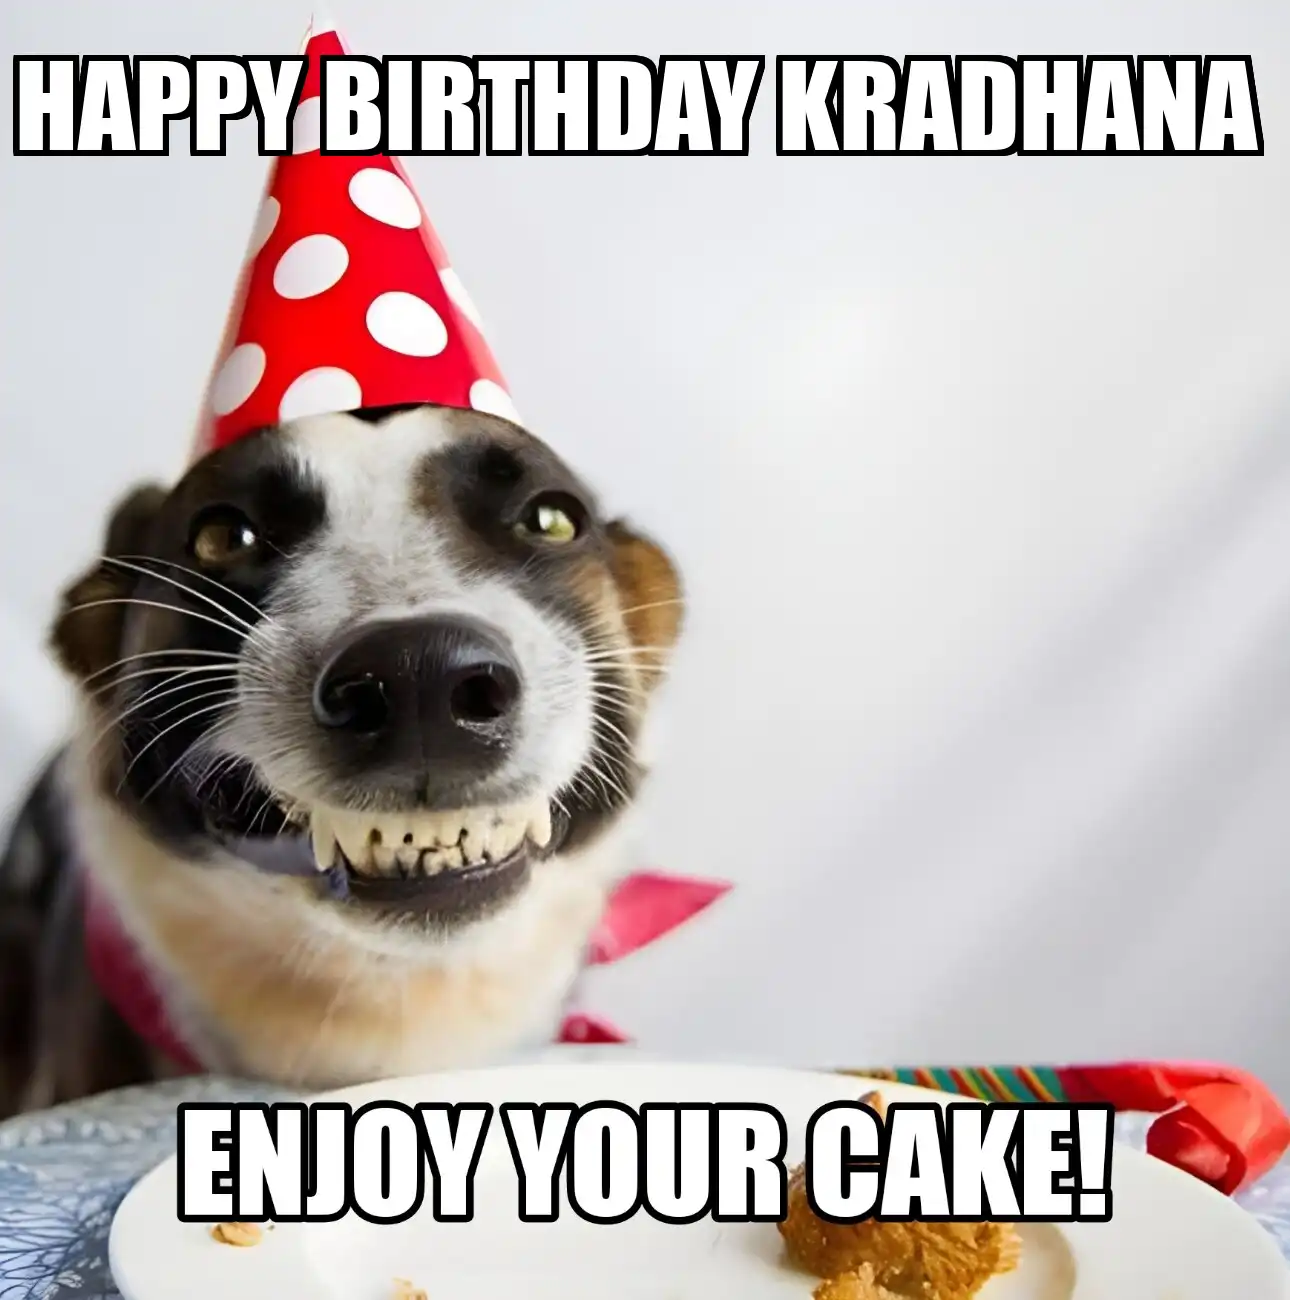 Happy Birthday Kradhana Enjoy Your Cake Dog Meme